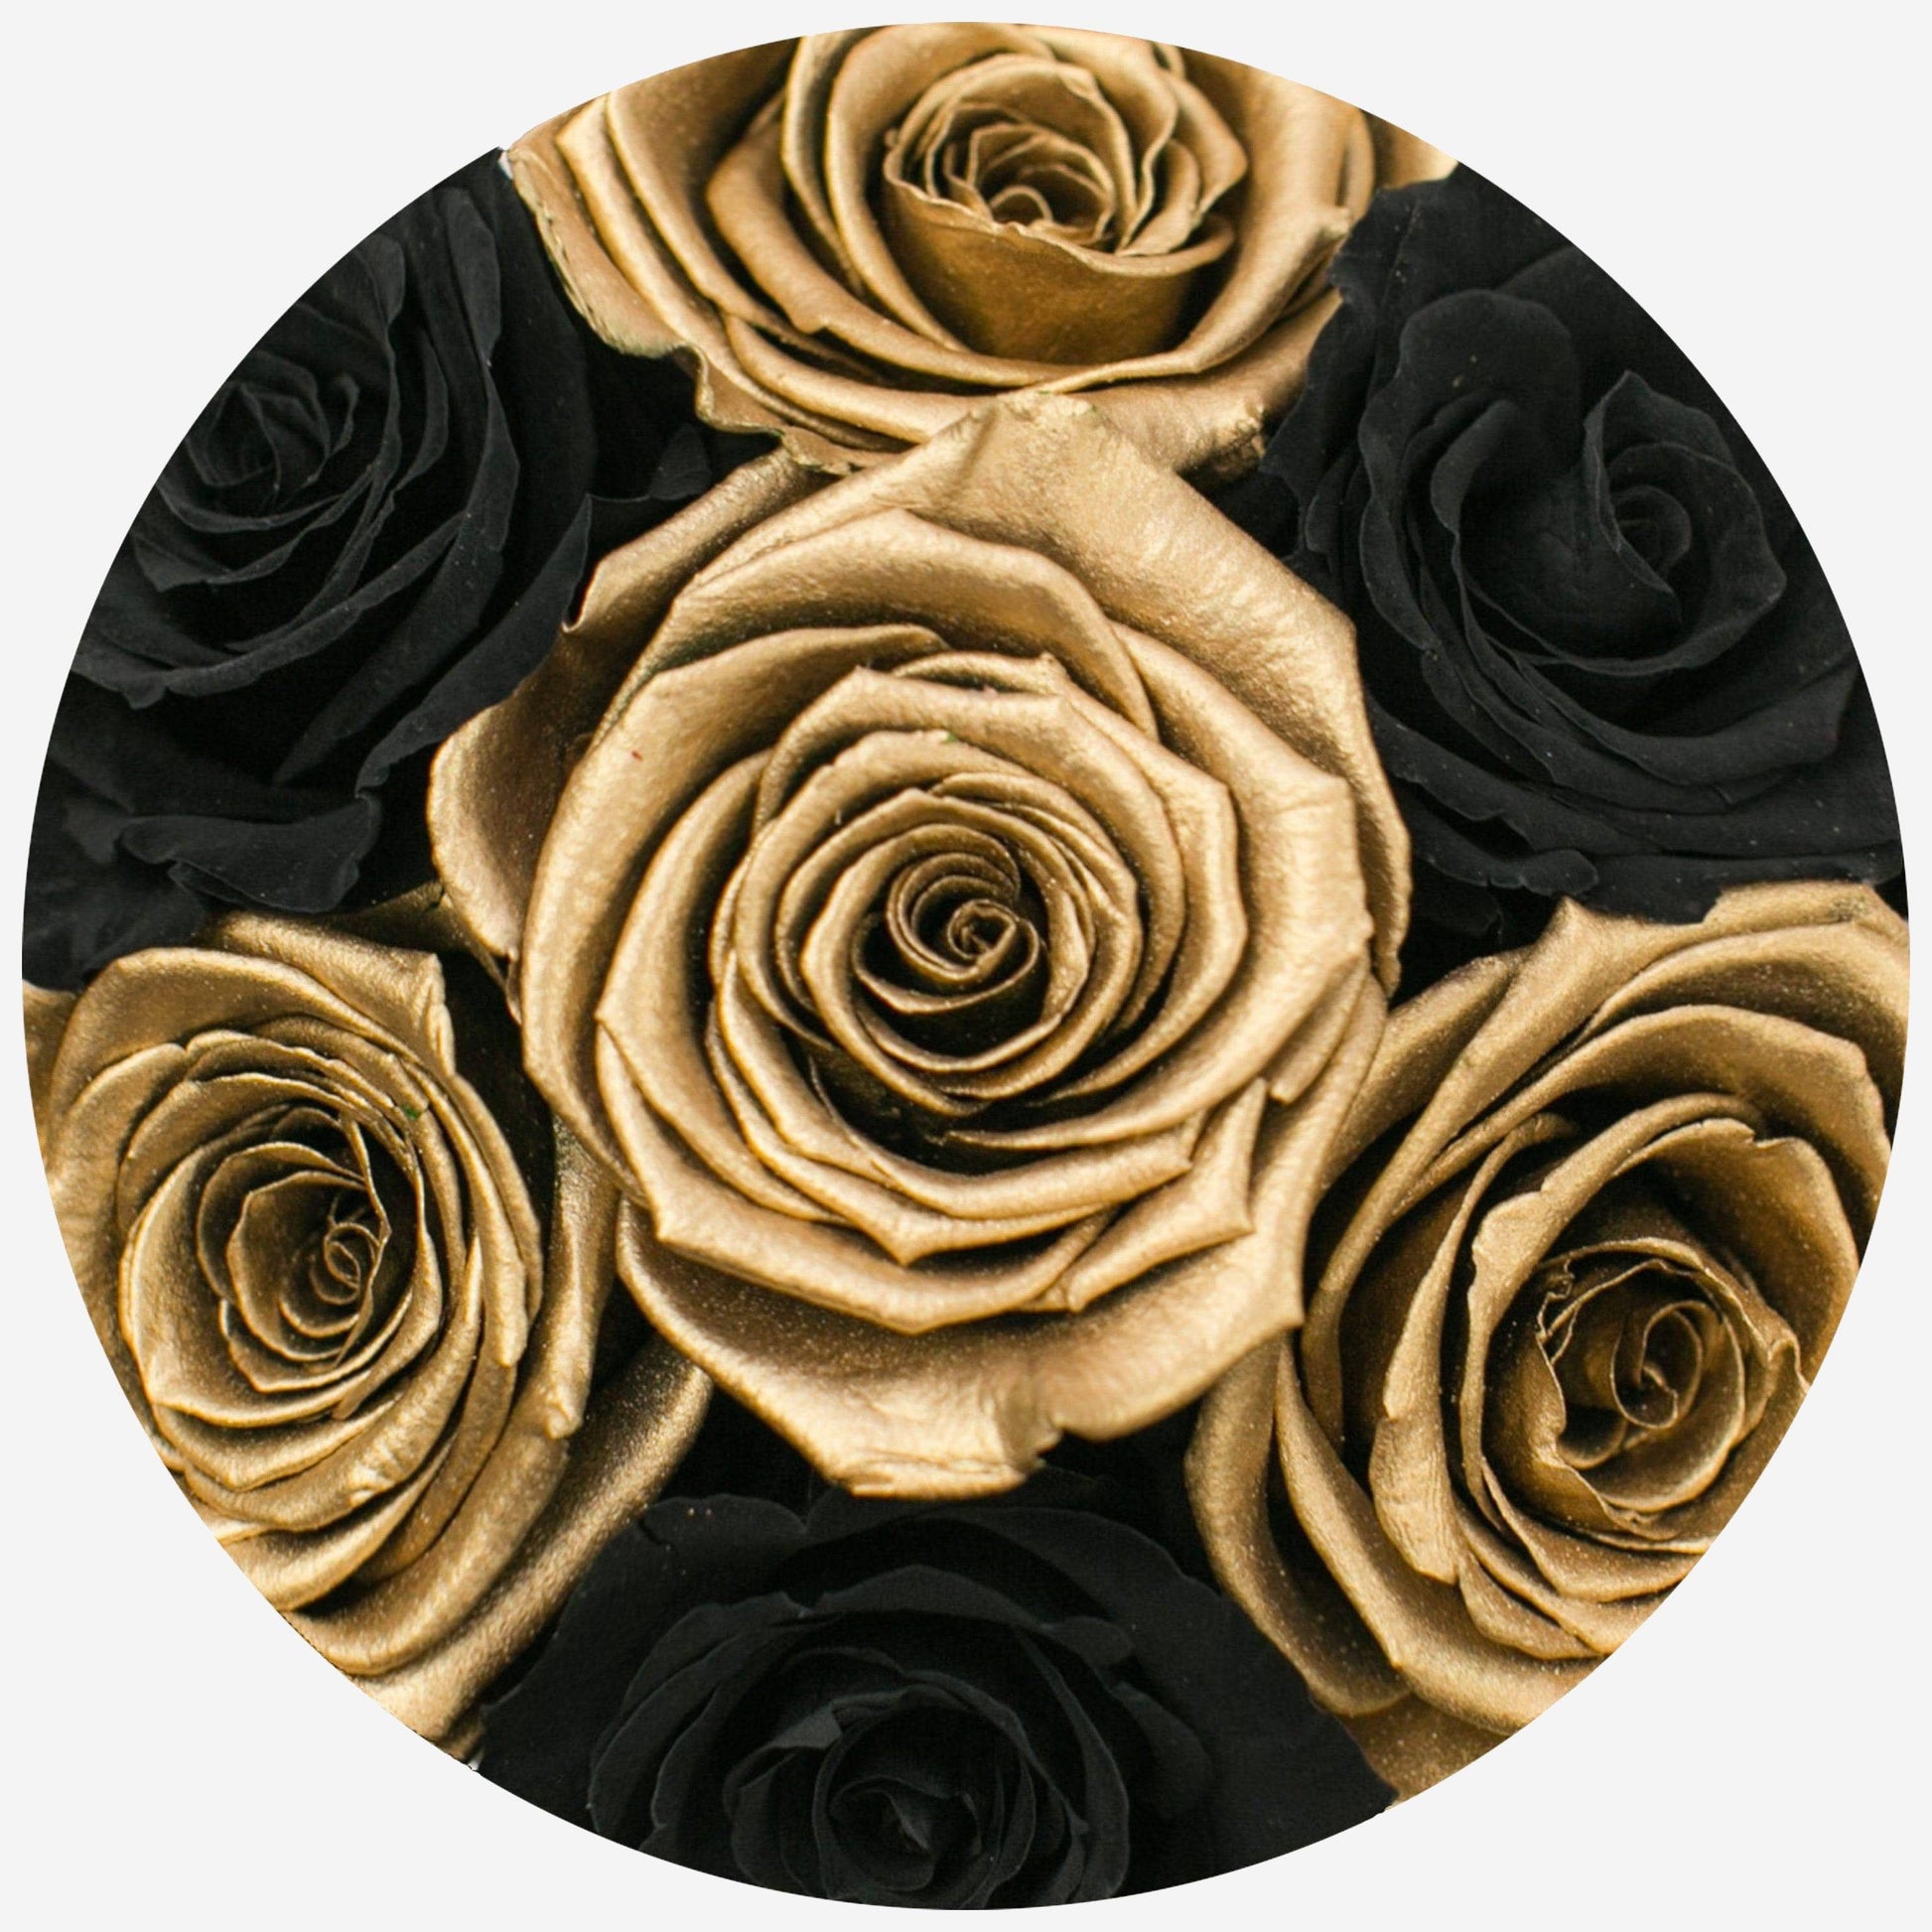 Basic White Box | Black & Gold Roses - The Million Roses